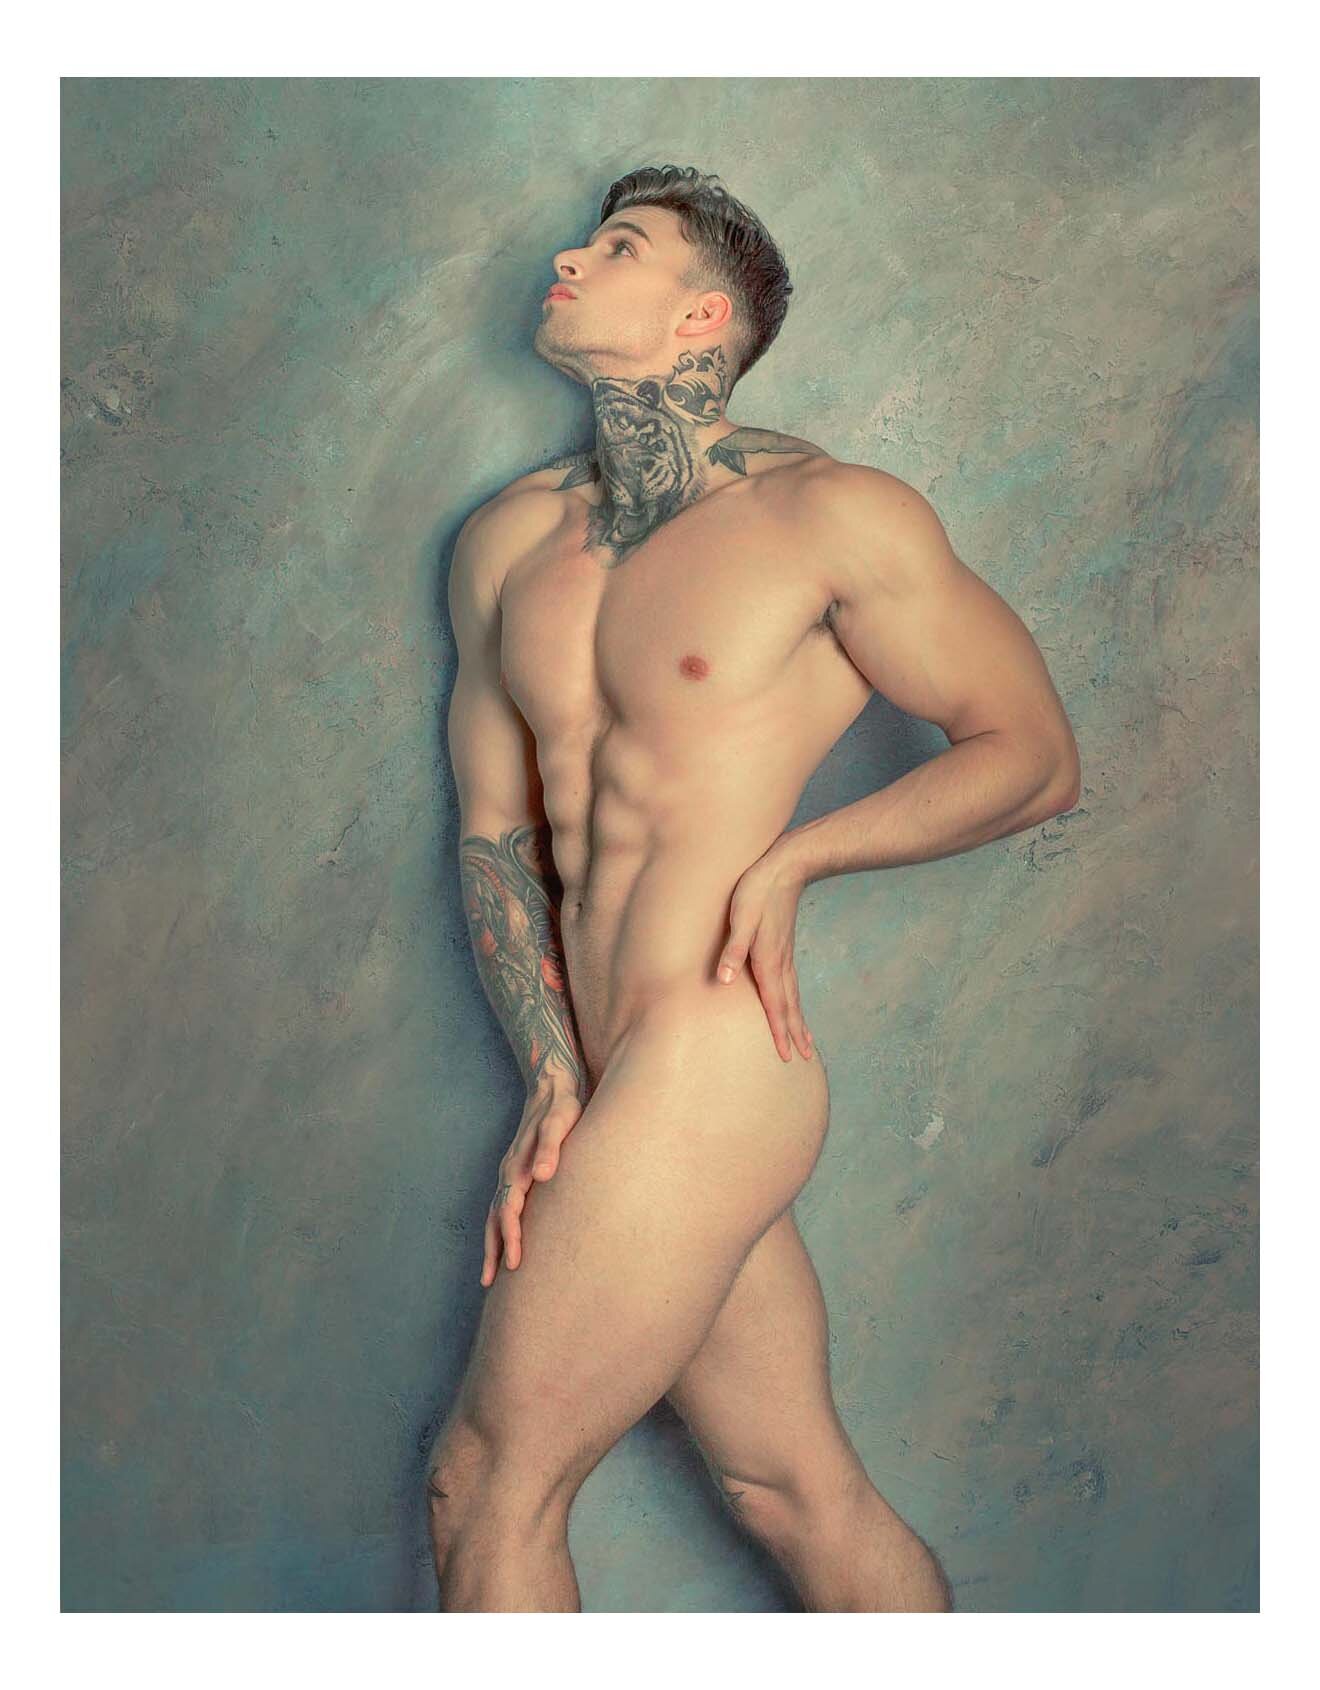 Free nude male gallery - Porno photo